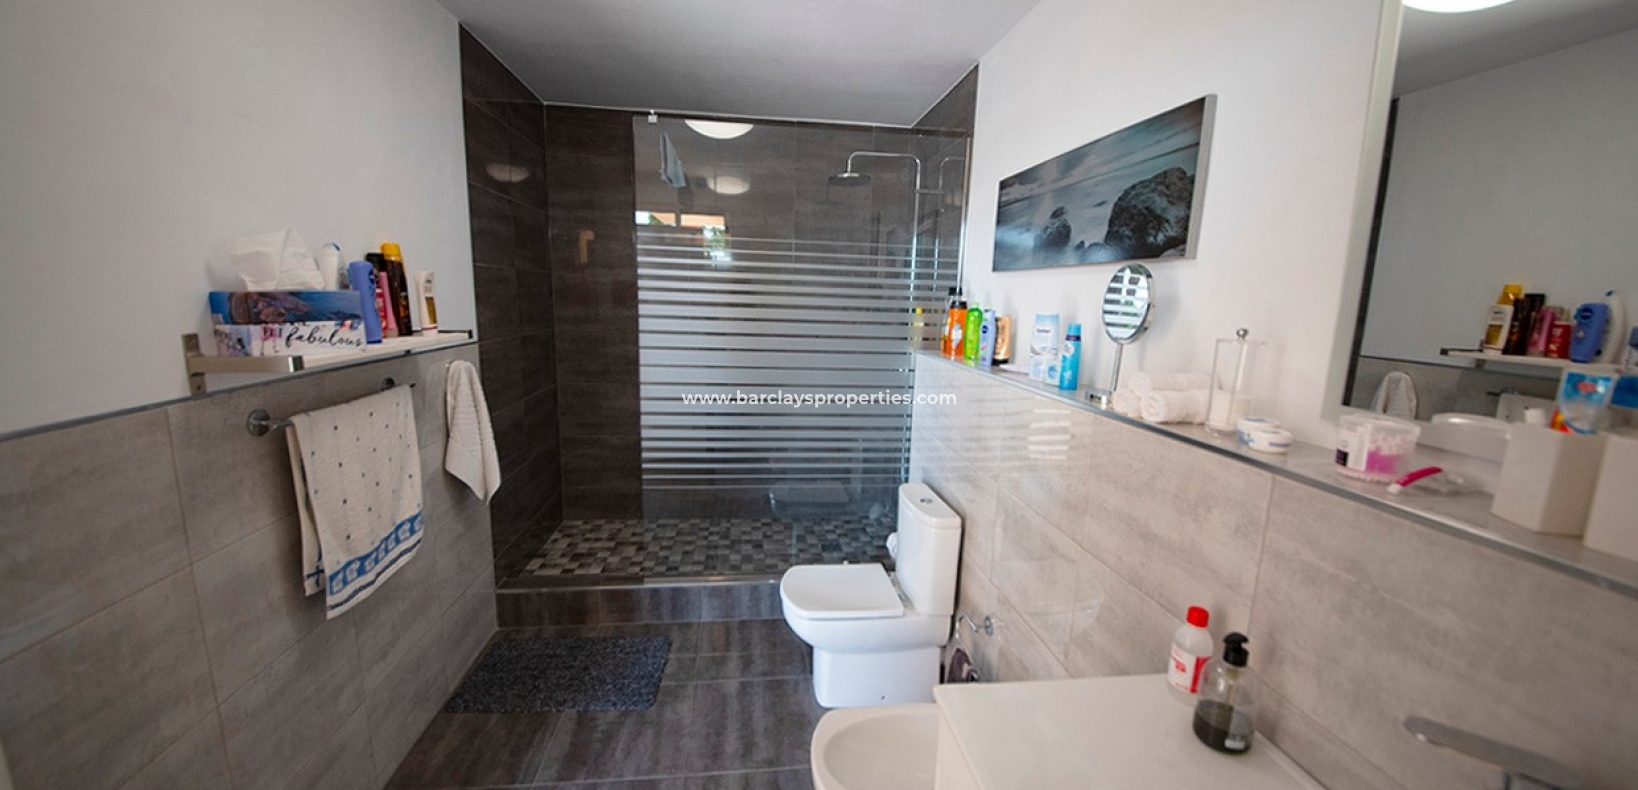 Propriété de style maison de ville à vendre à La Marina, Alicante Espagne. - salle de bains